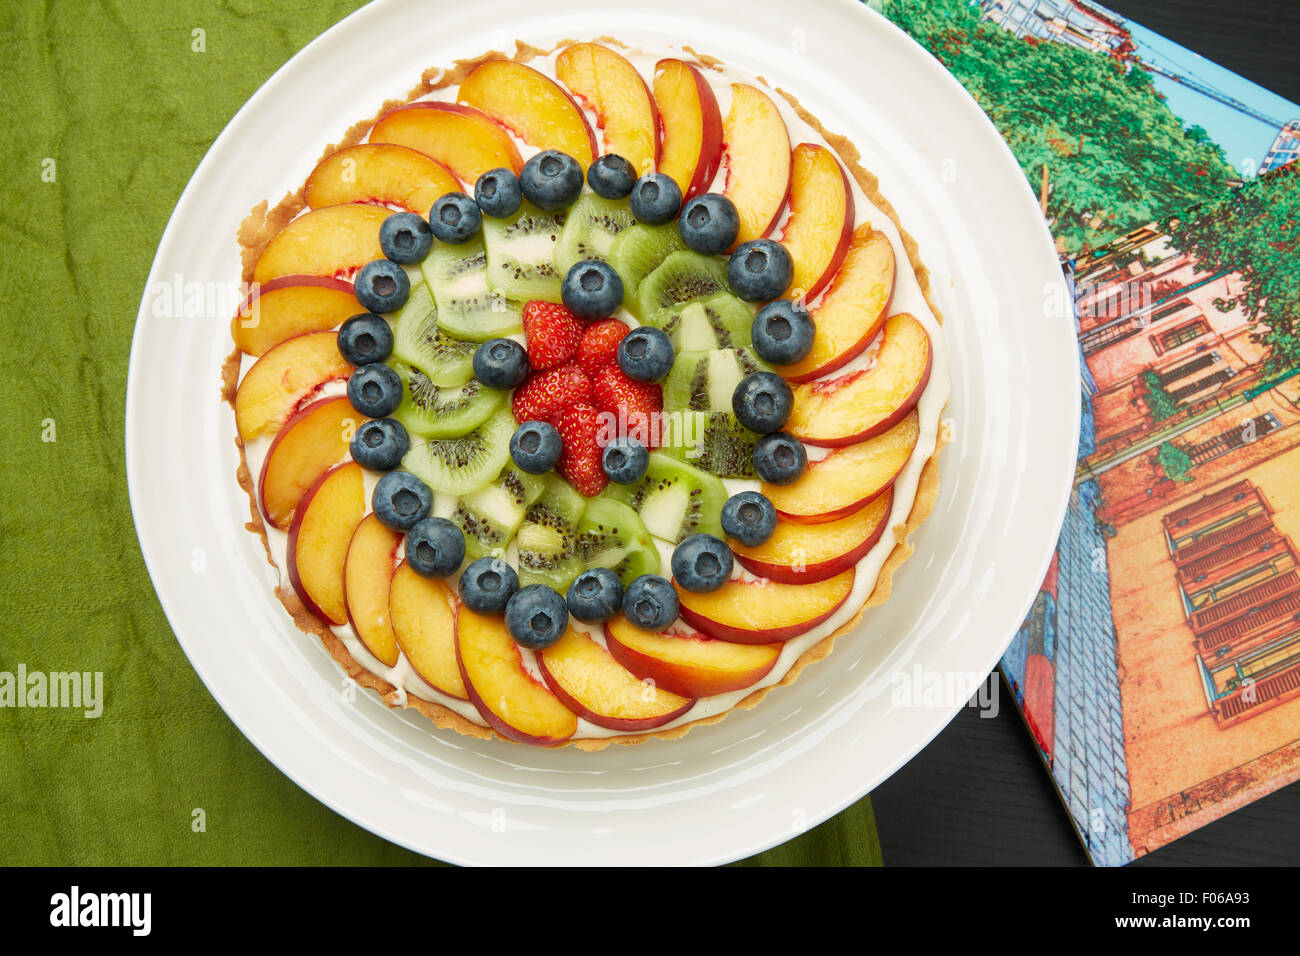 Un alto ángulo de visualización de una deliciosa tarta con Berry, manzanas y kiwis en un plato redondo blanco servido en la mesa. Foto de stock